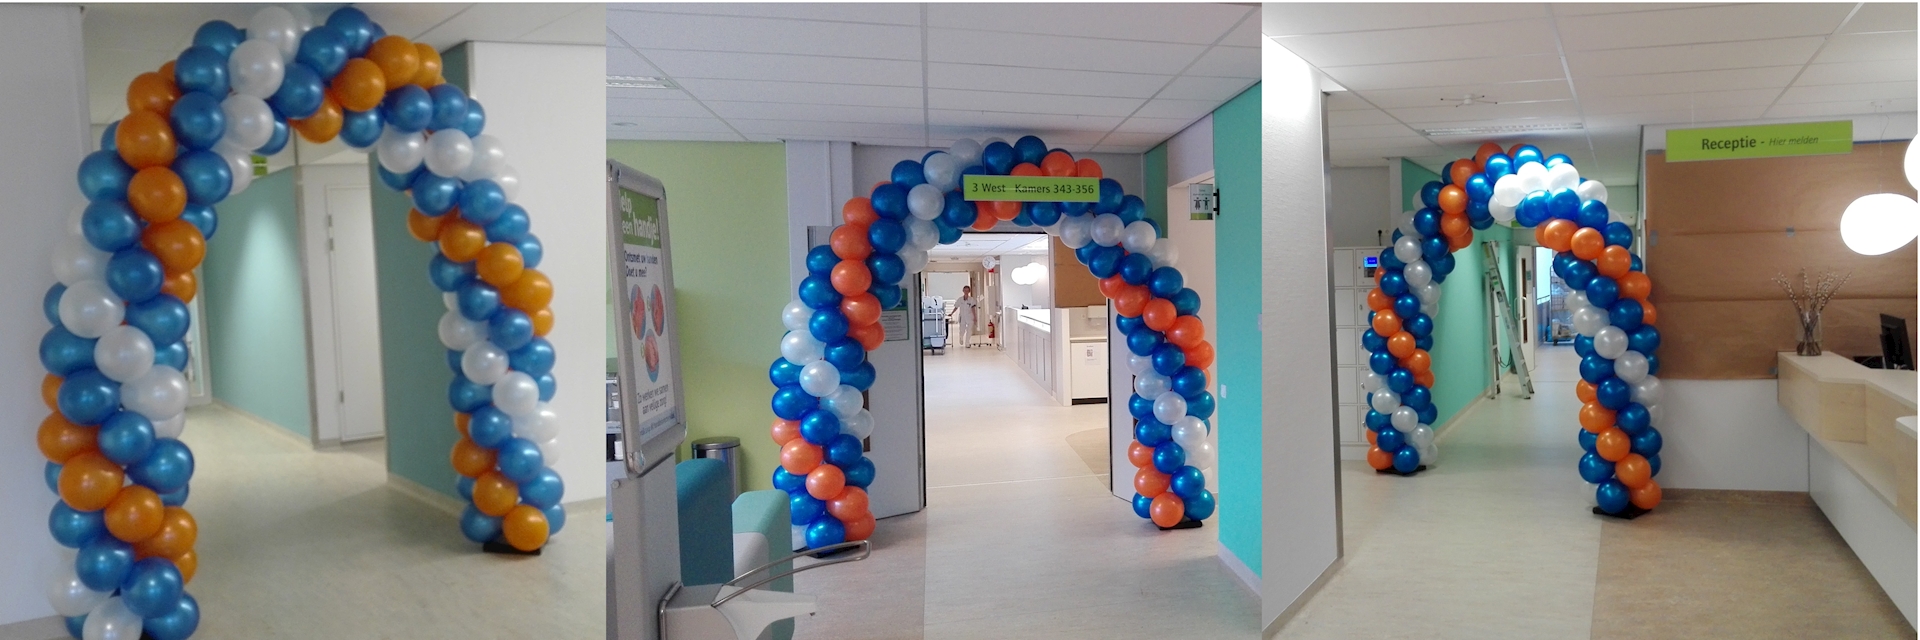 opening nieuwe afdeling BovenIJ zkh in Amsterdam noord met drie ballonnen bogen op de afdeling